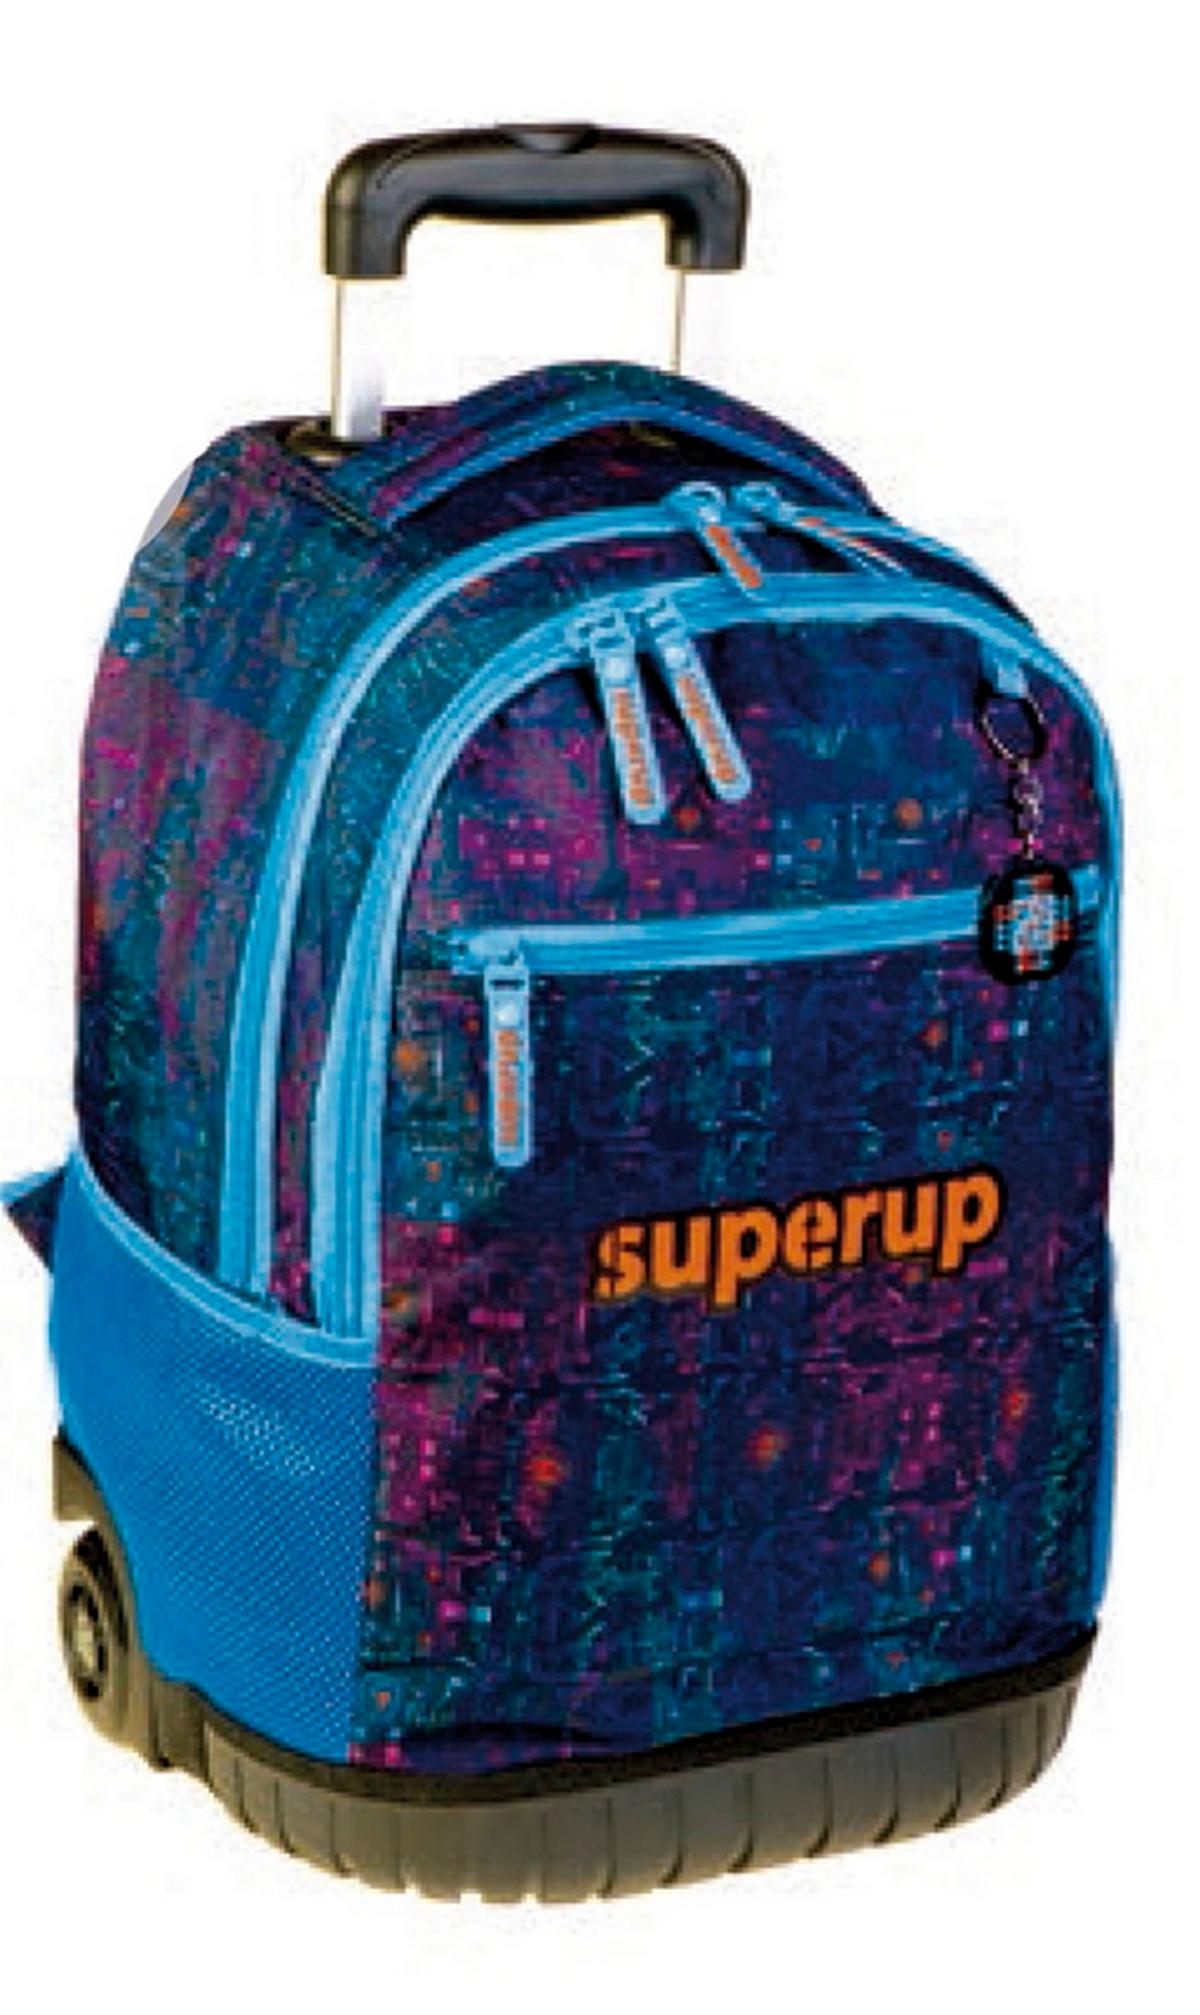 Τσάντα τρόλλευ δημοτικού Busquets Superup